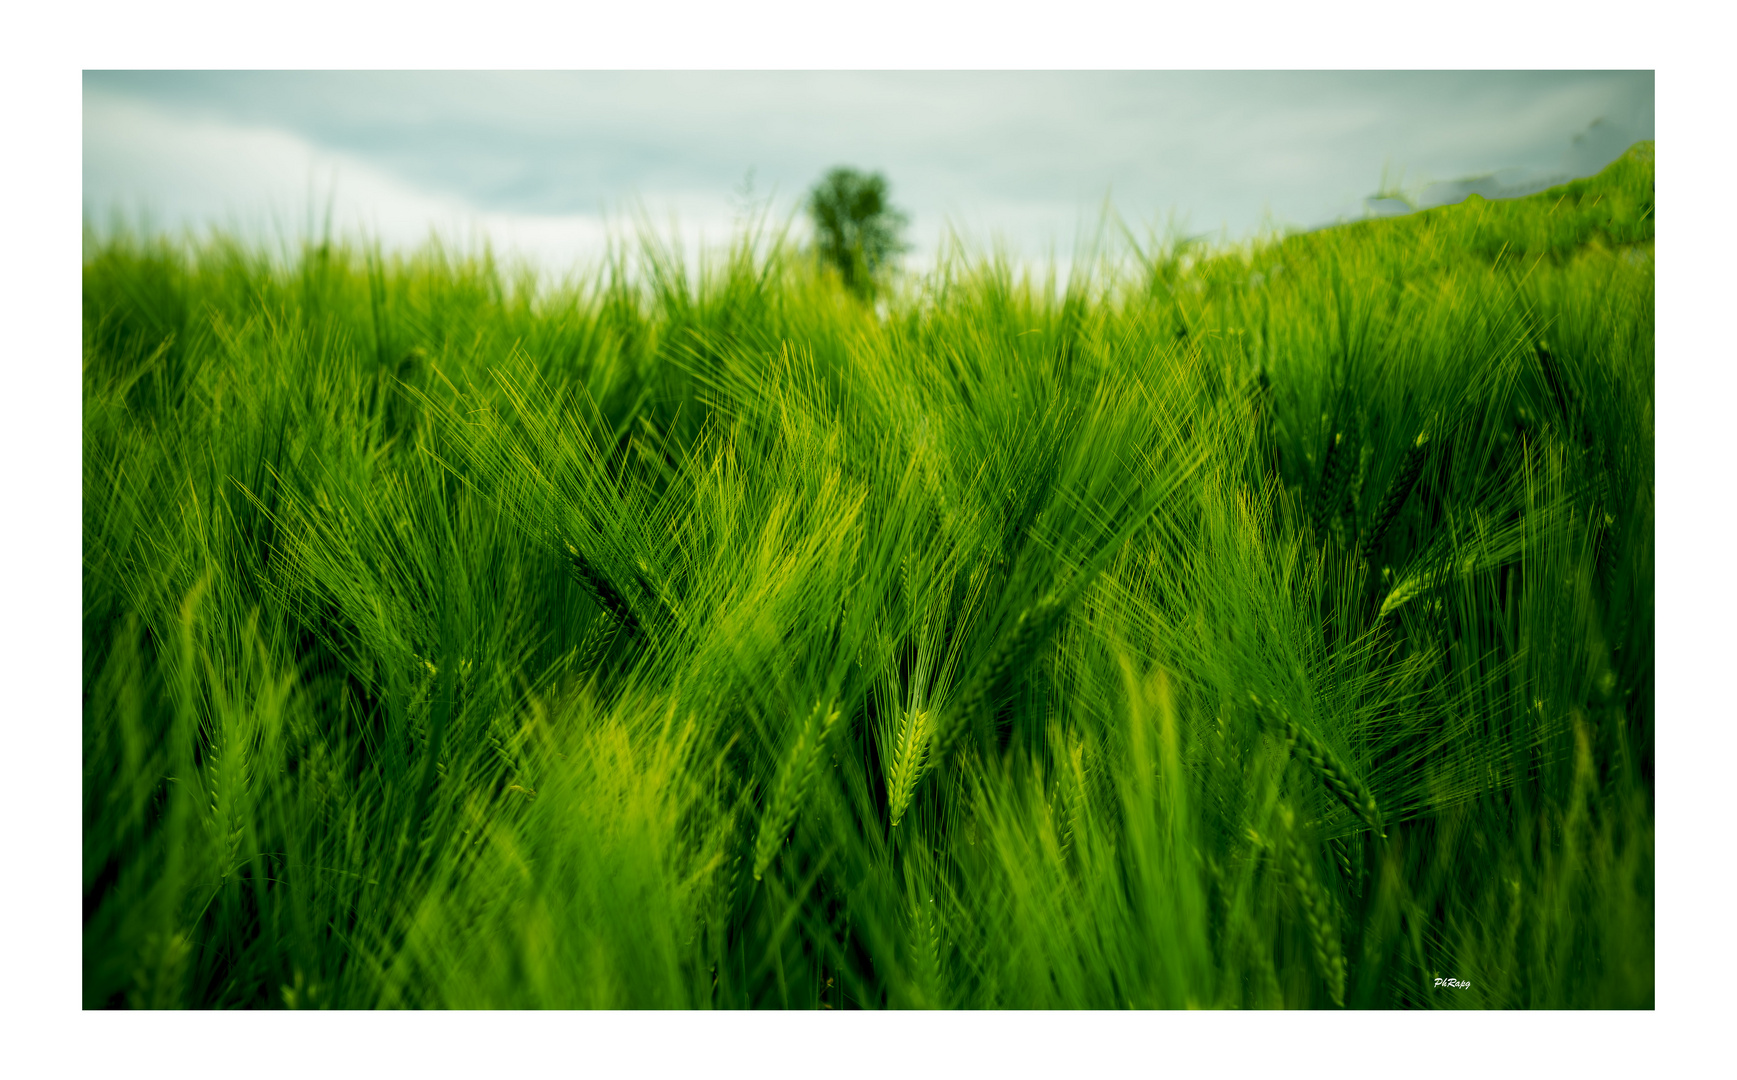 Green field 